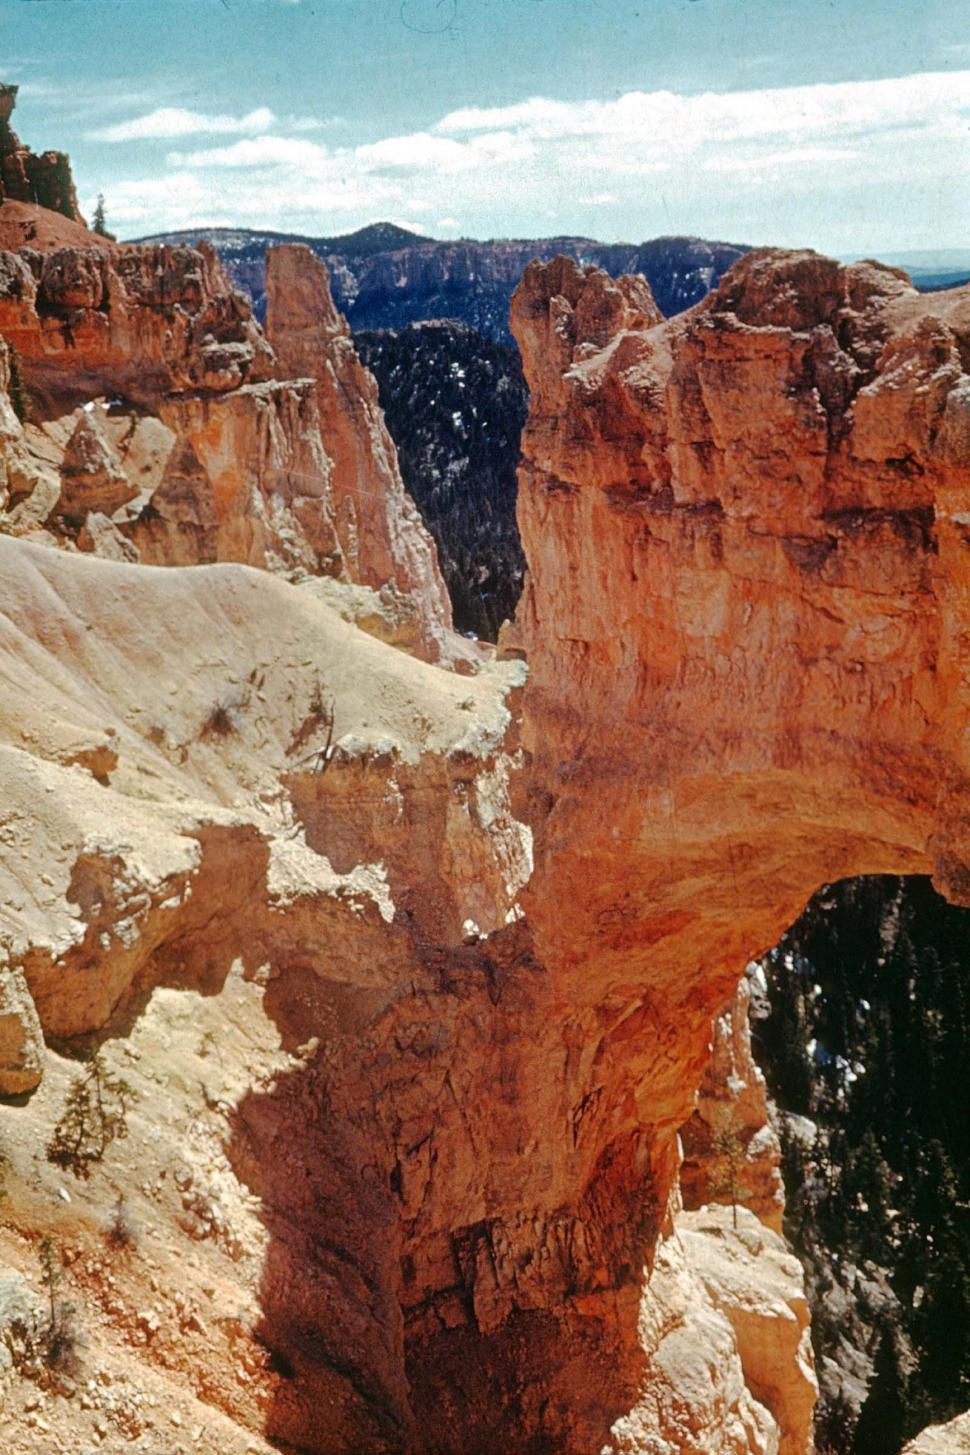 Free Image of bryce canyon national park utah rainbow landscapes vintage photo bridge rainbow bridge canyons geology geologic formations erosion eroded vintage photograph FACAT001 